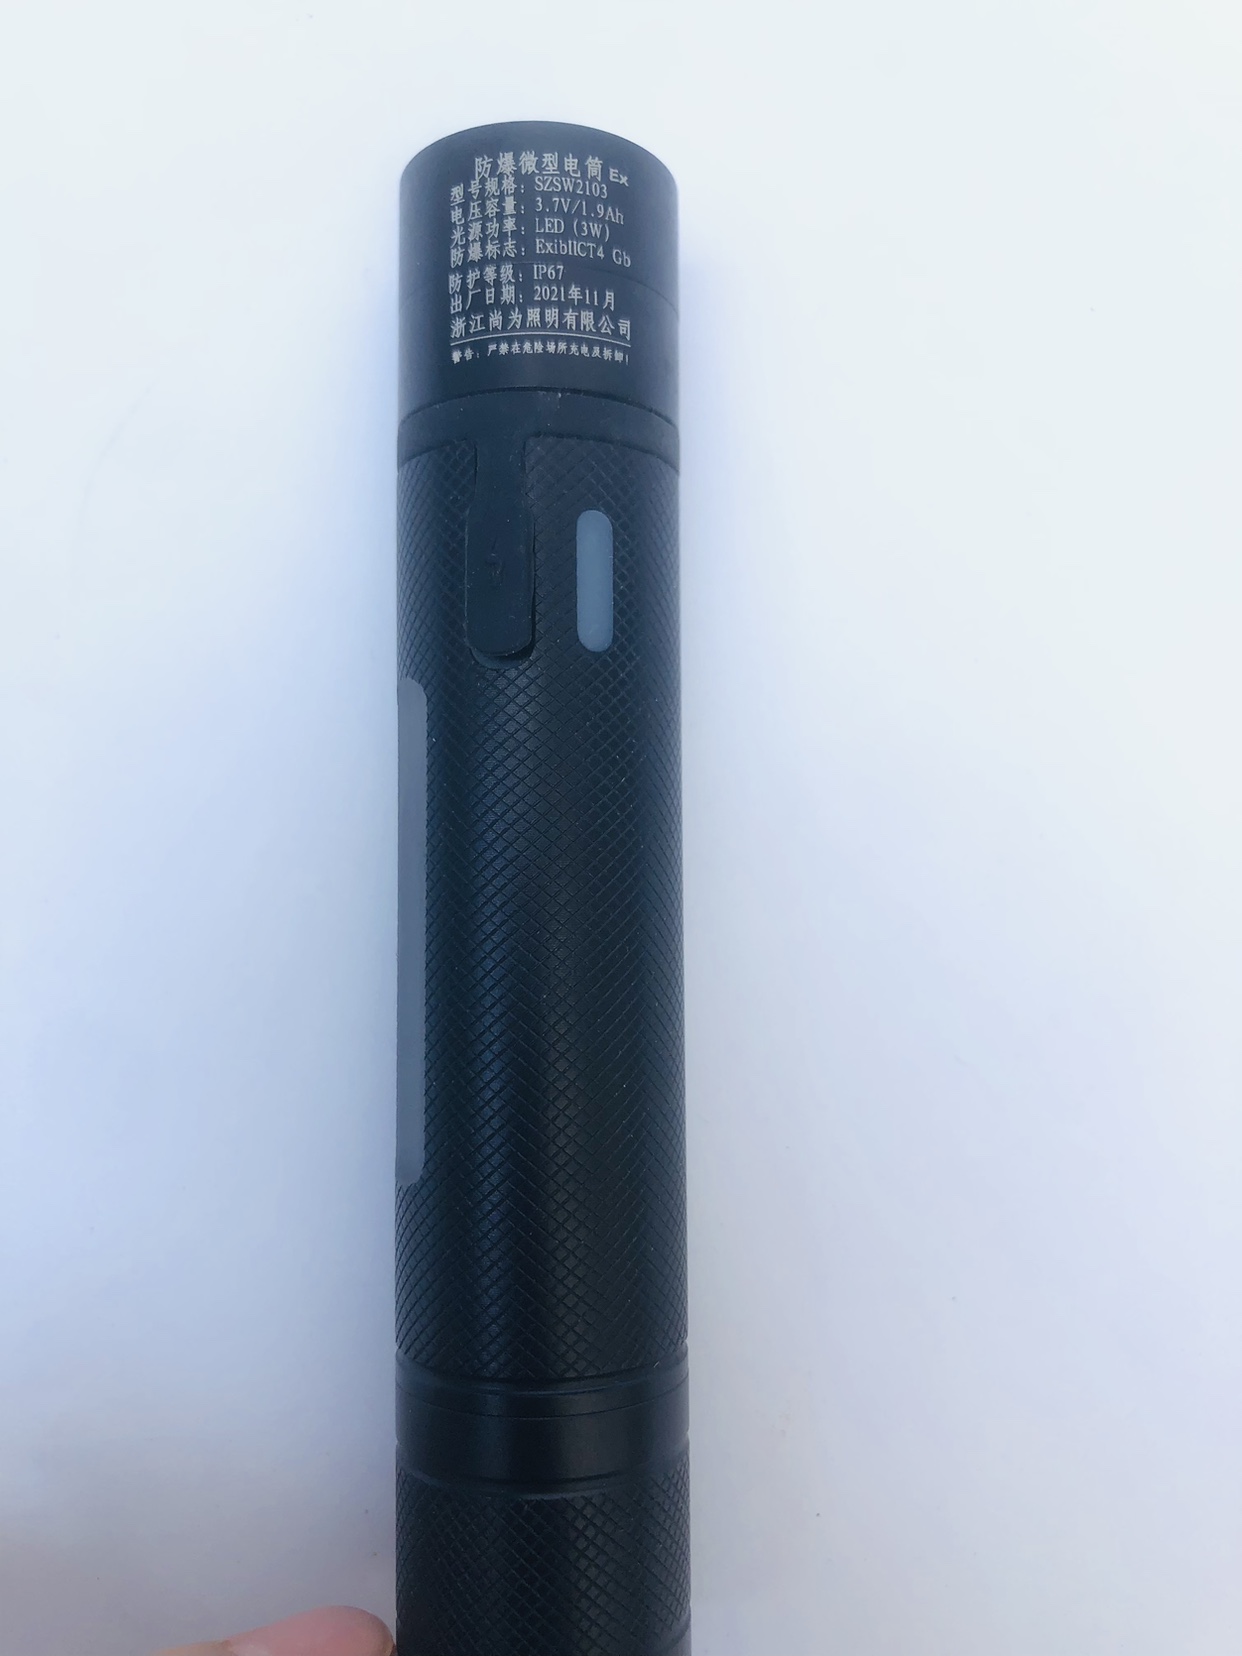 同款尚为SZSW2103防爆手电筒迷你手电电量显示LED头灯充电手电筒